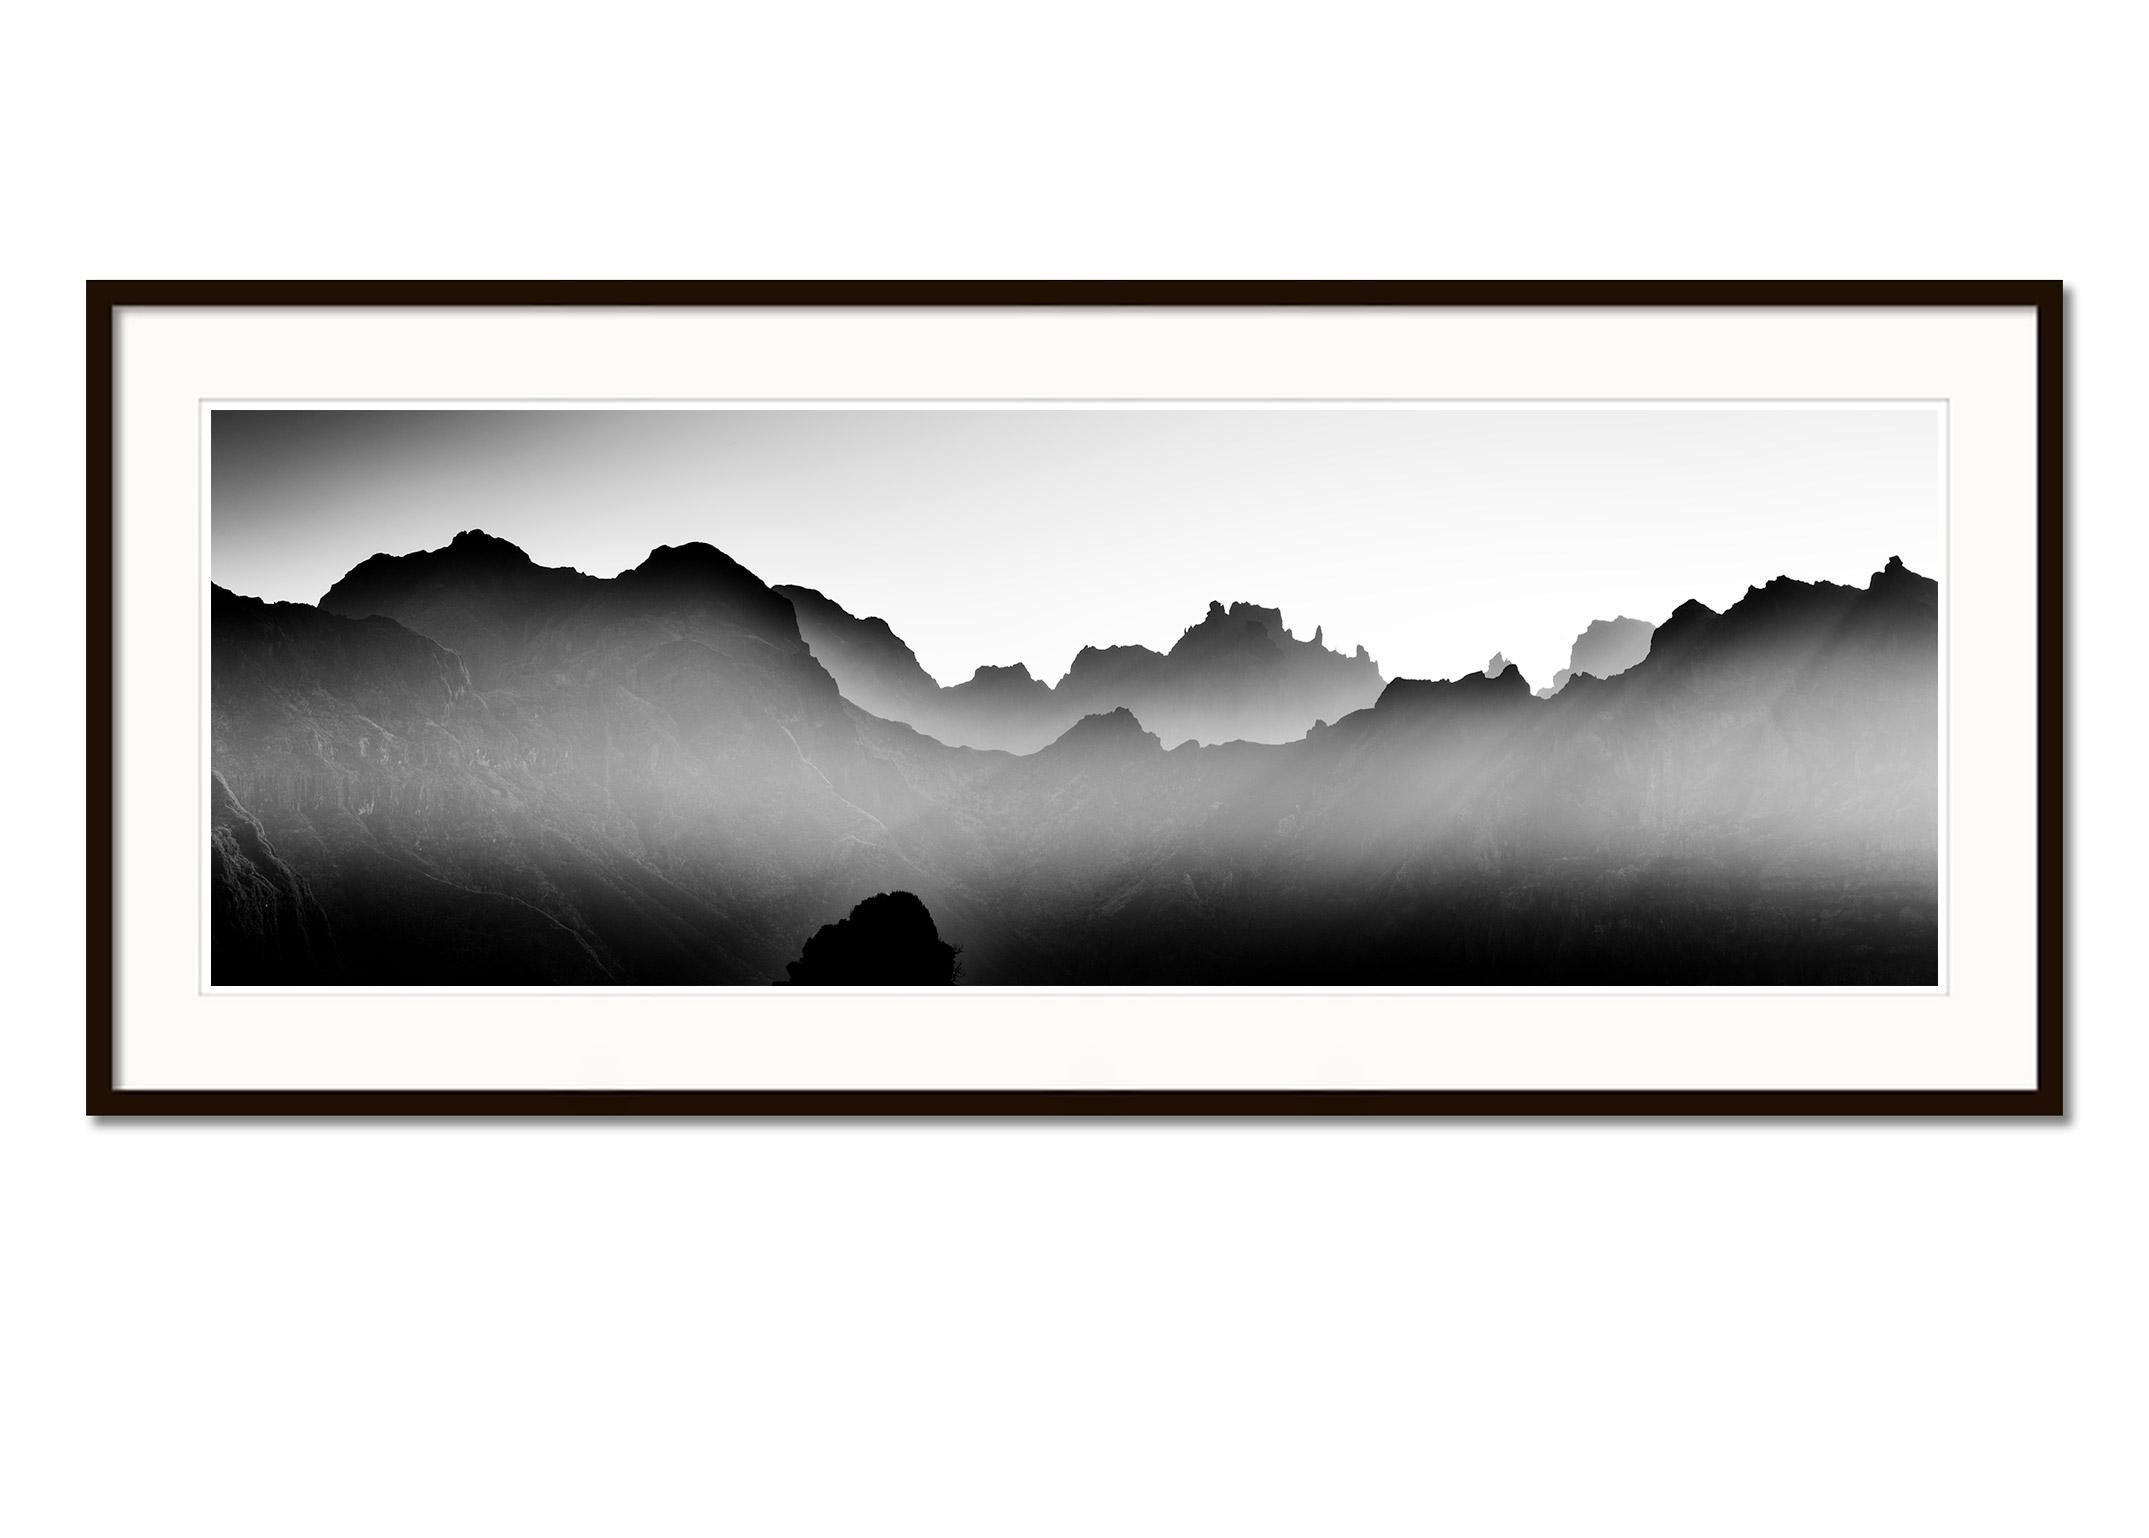 Schwarz-Weiß-Panorama-Landschaftsfotografie. Pigmenttintendruck in einer limitierten Auflage von 7 Exemplaren. Alle Drucke von Gerald Berghammer werden auf Bestellung in limitierter Auflage auf Hahnemuehle Photo Rag Baryta hergestellt. Jeder Druck